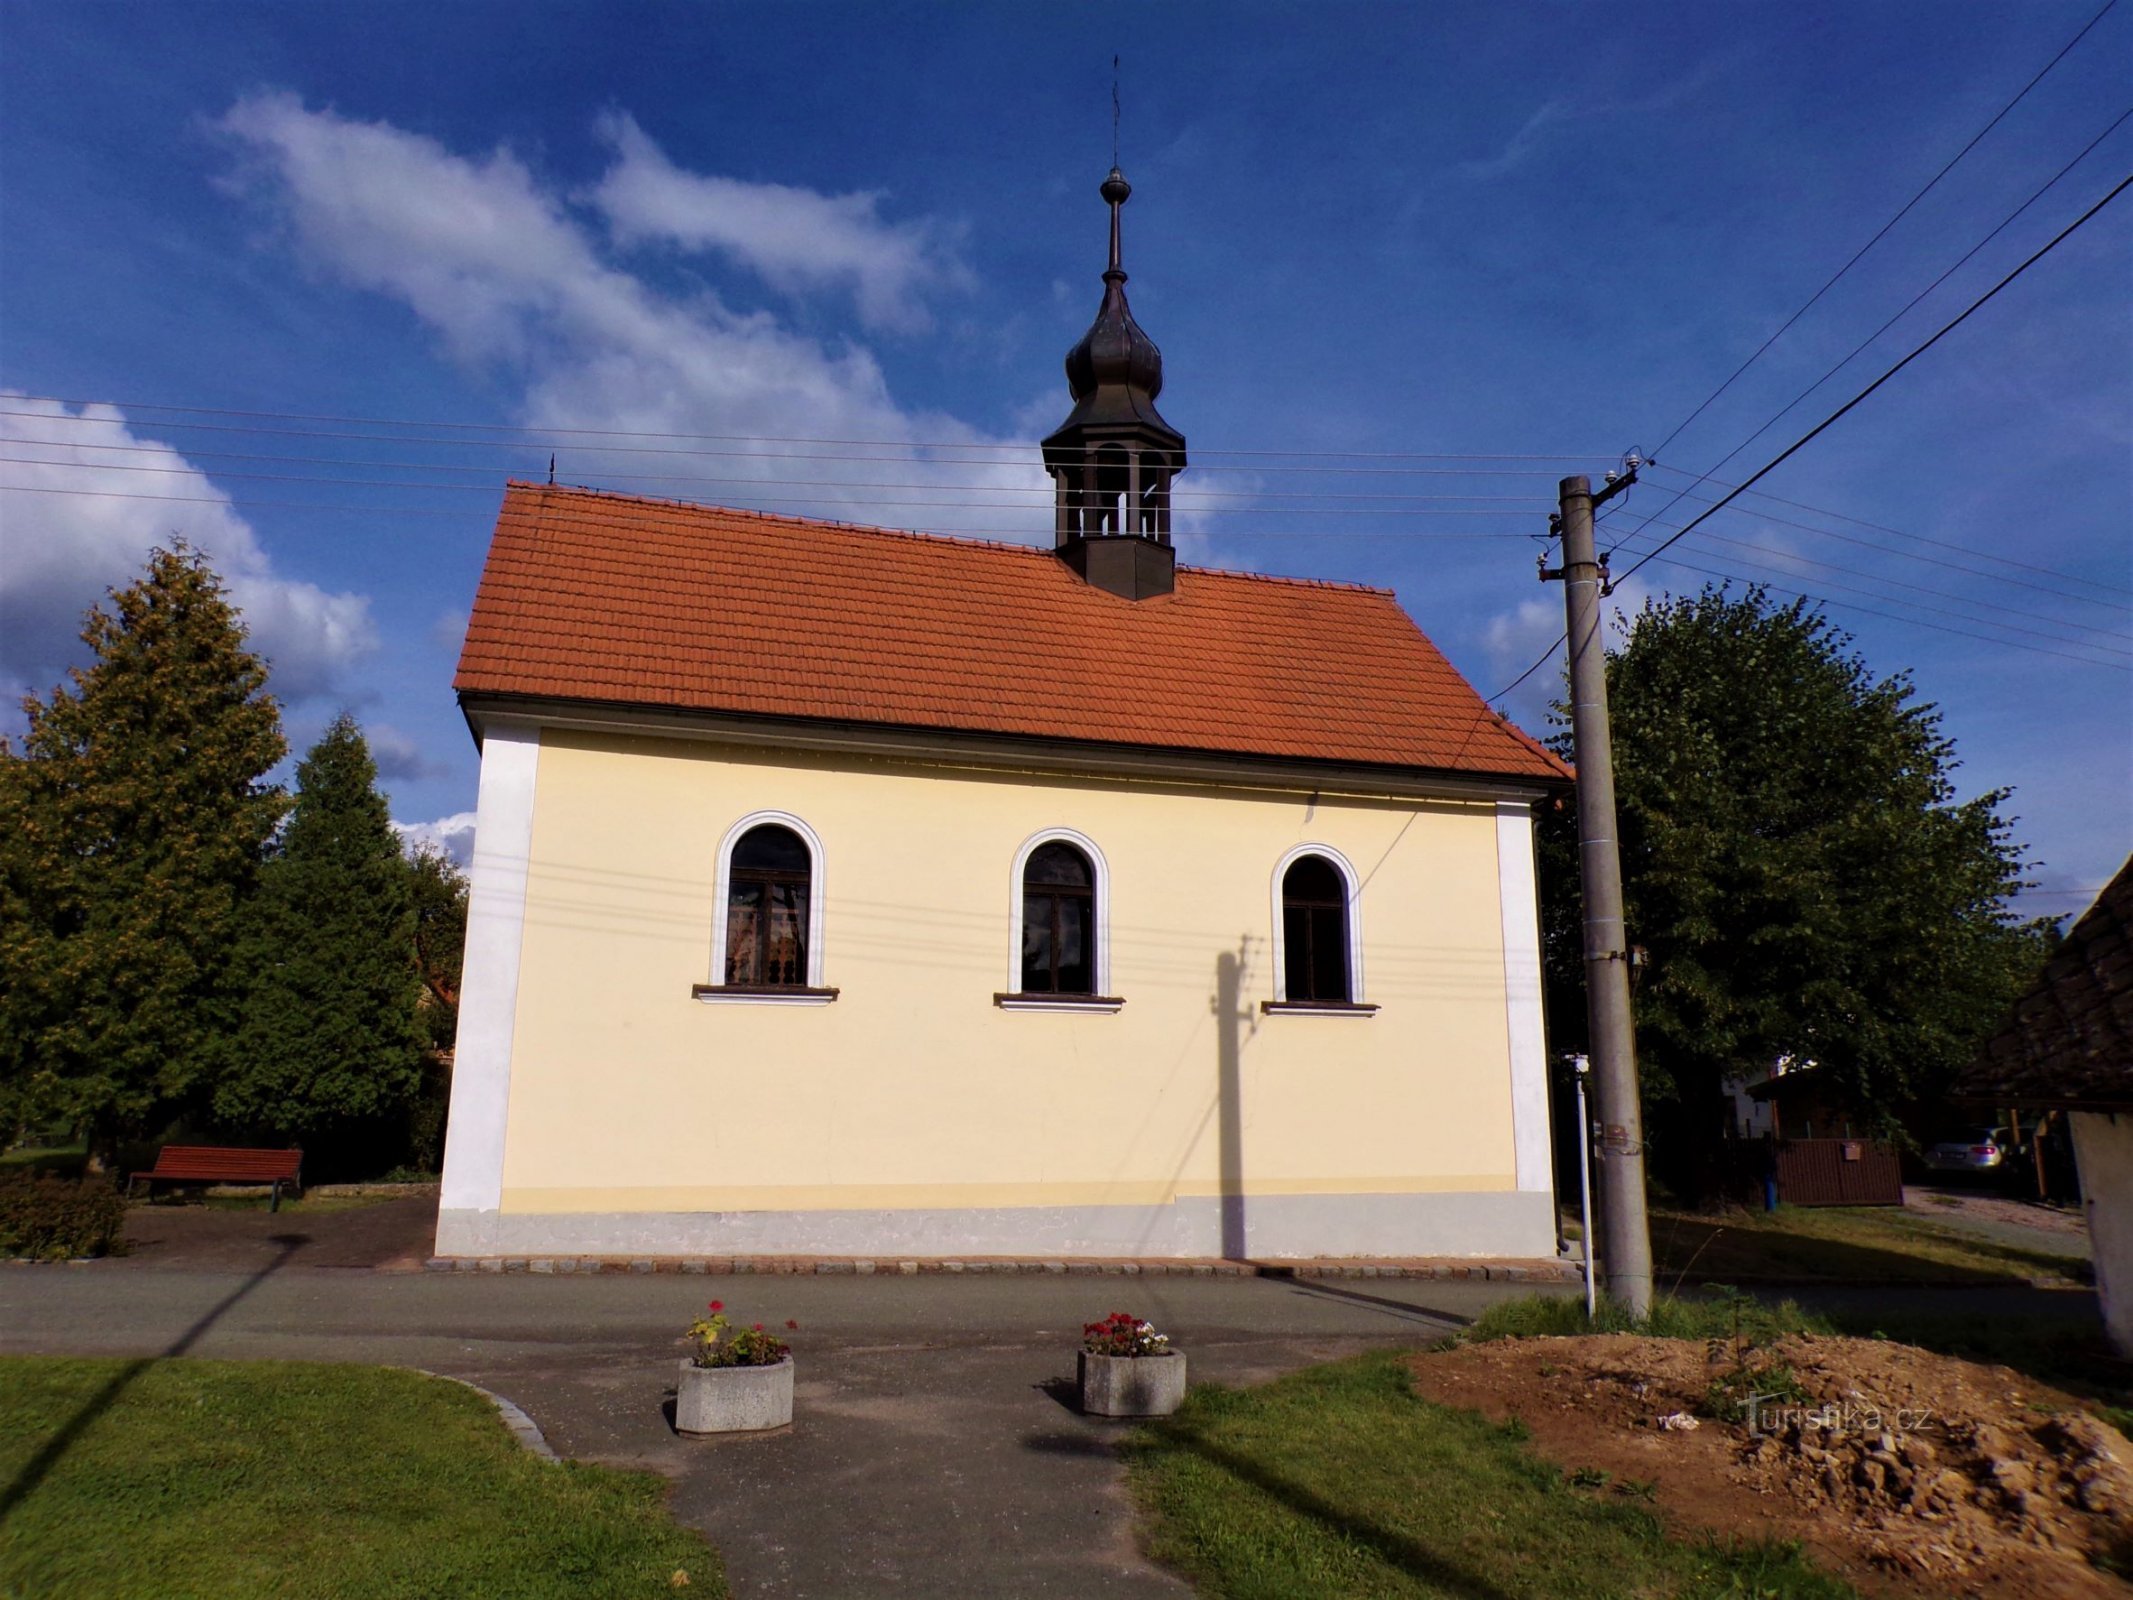 Kaple Panny Marie Sněžné (Žernov, 1.9.2021)